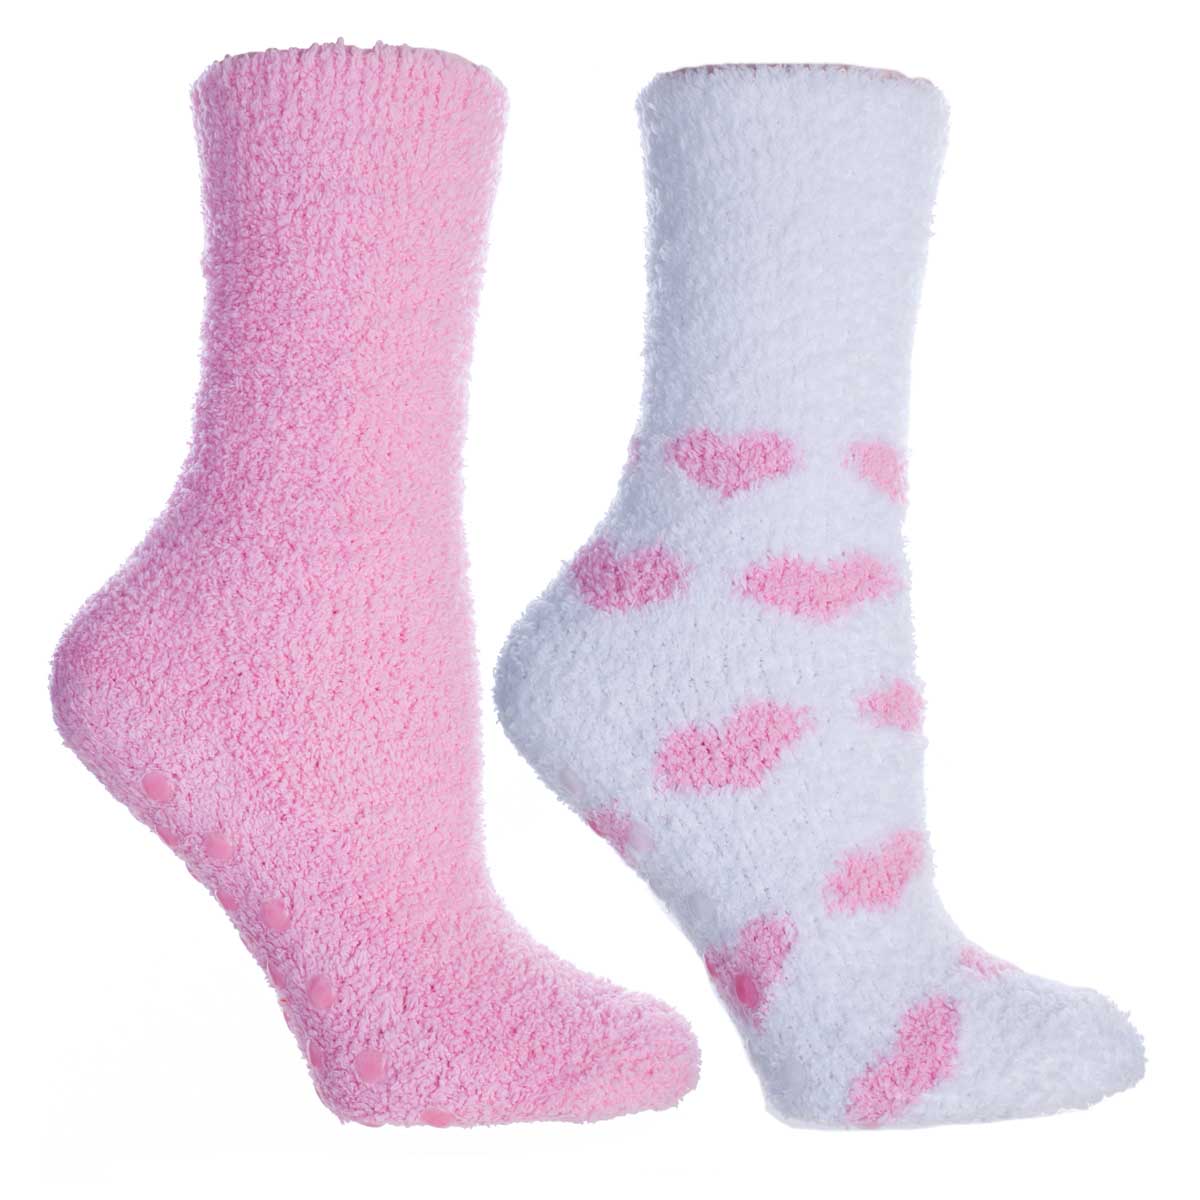 Women's Lavender Infused Slipper Socks, 2-Pair Pack with Lavender Sachet, 